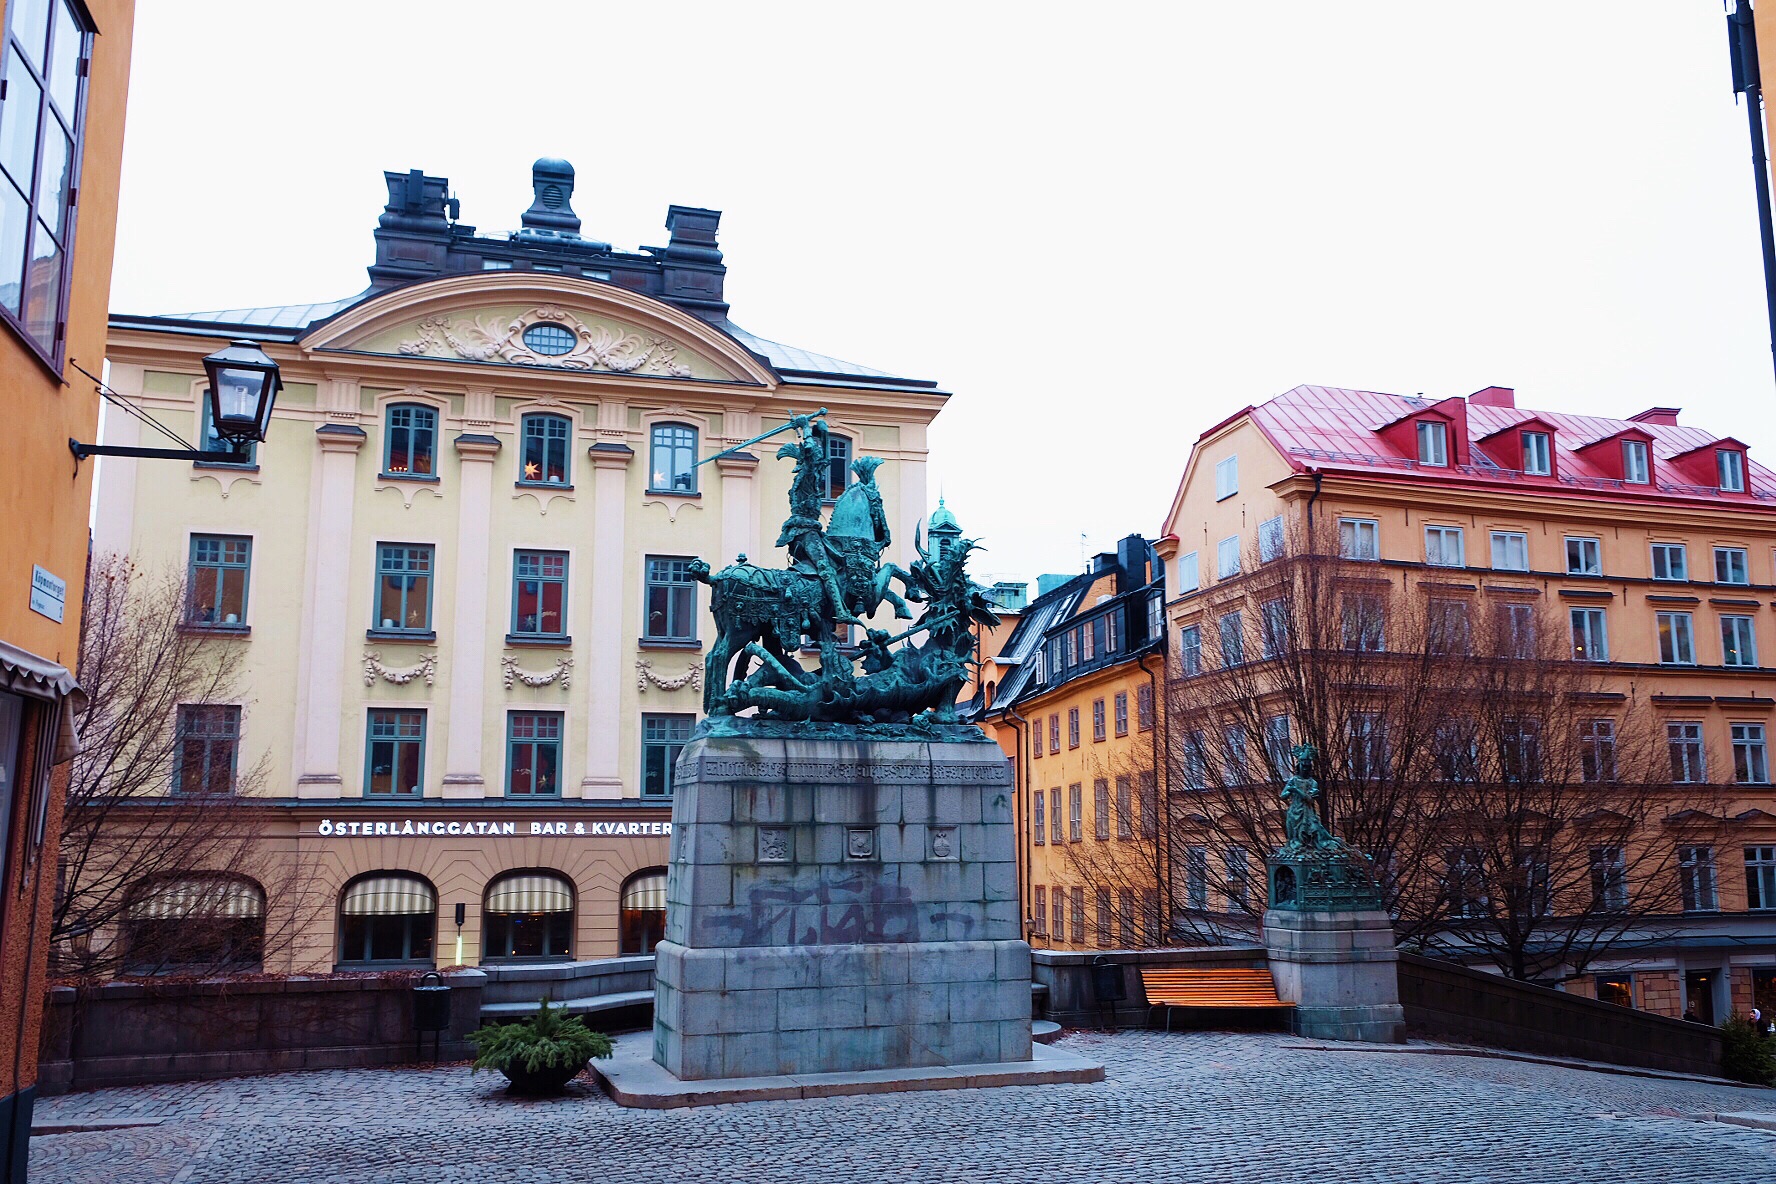 (斯德哥爾摩, 瑞典)诺贝尔博物馆 - 旅遊景點評論 - Tripadvisor